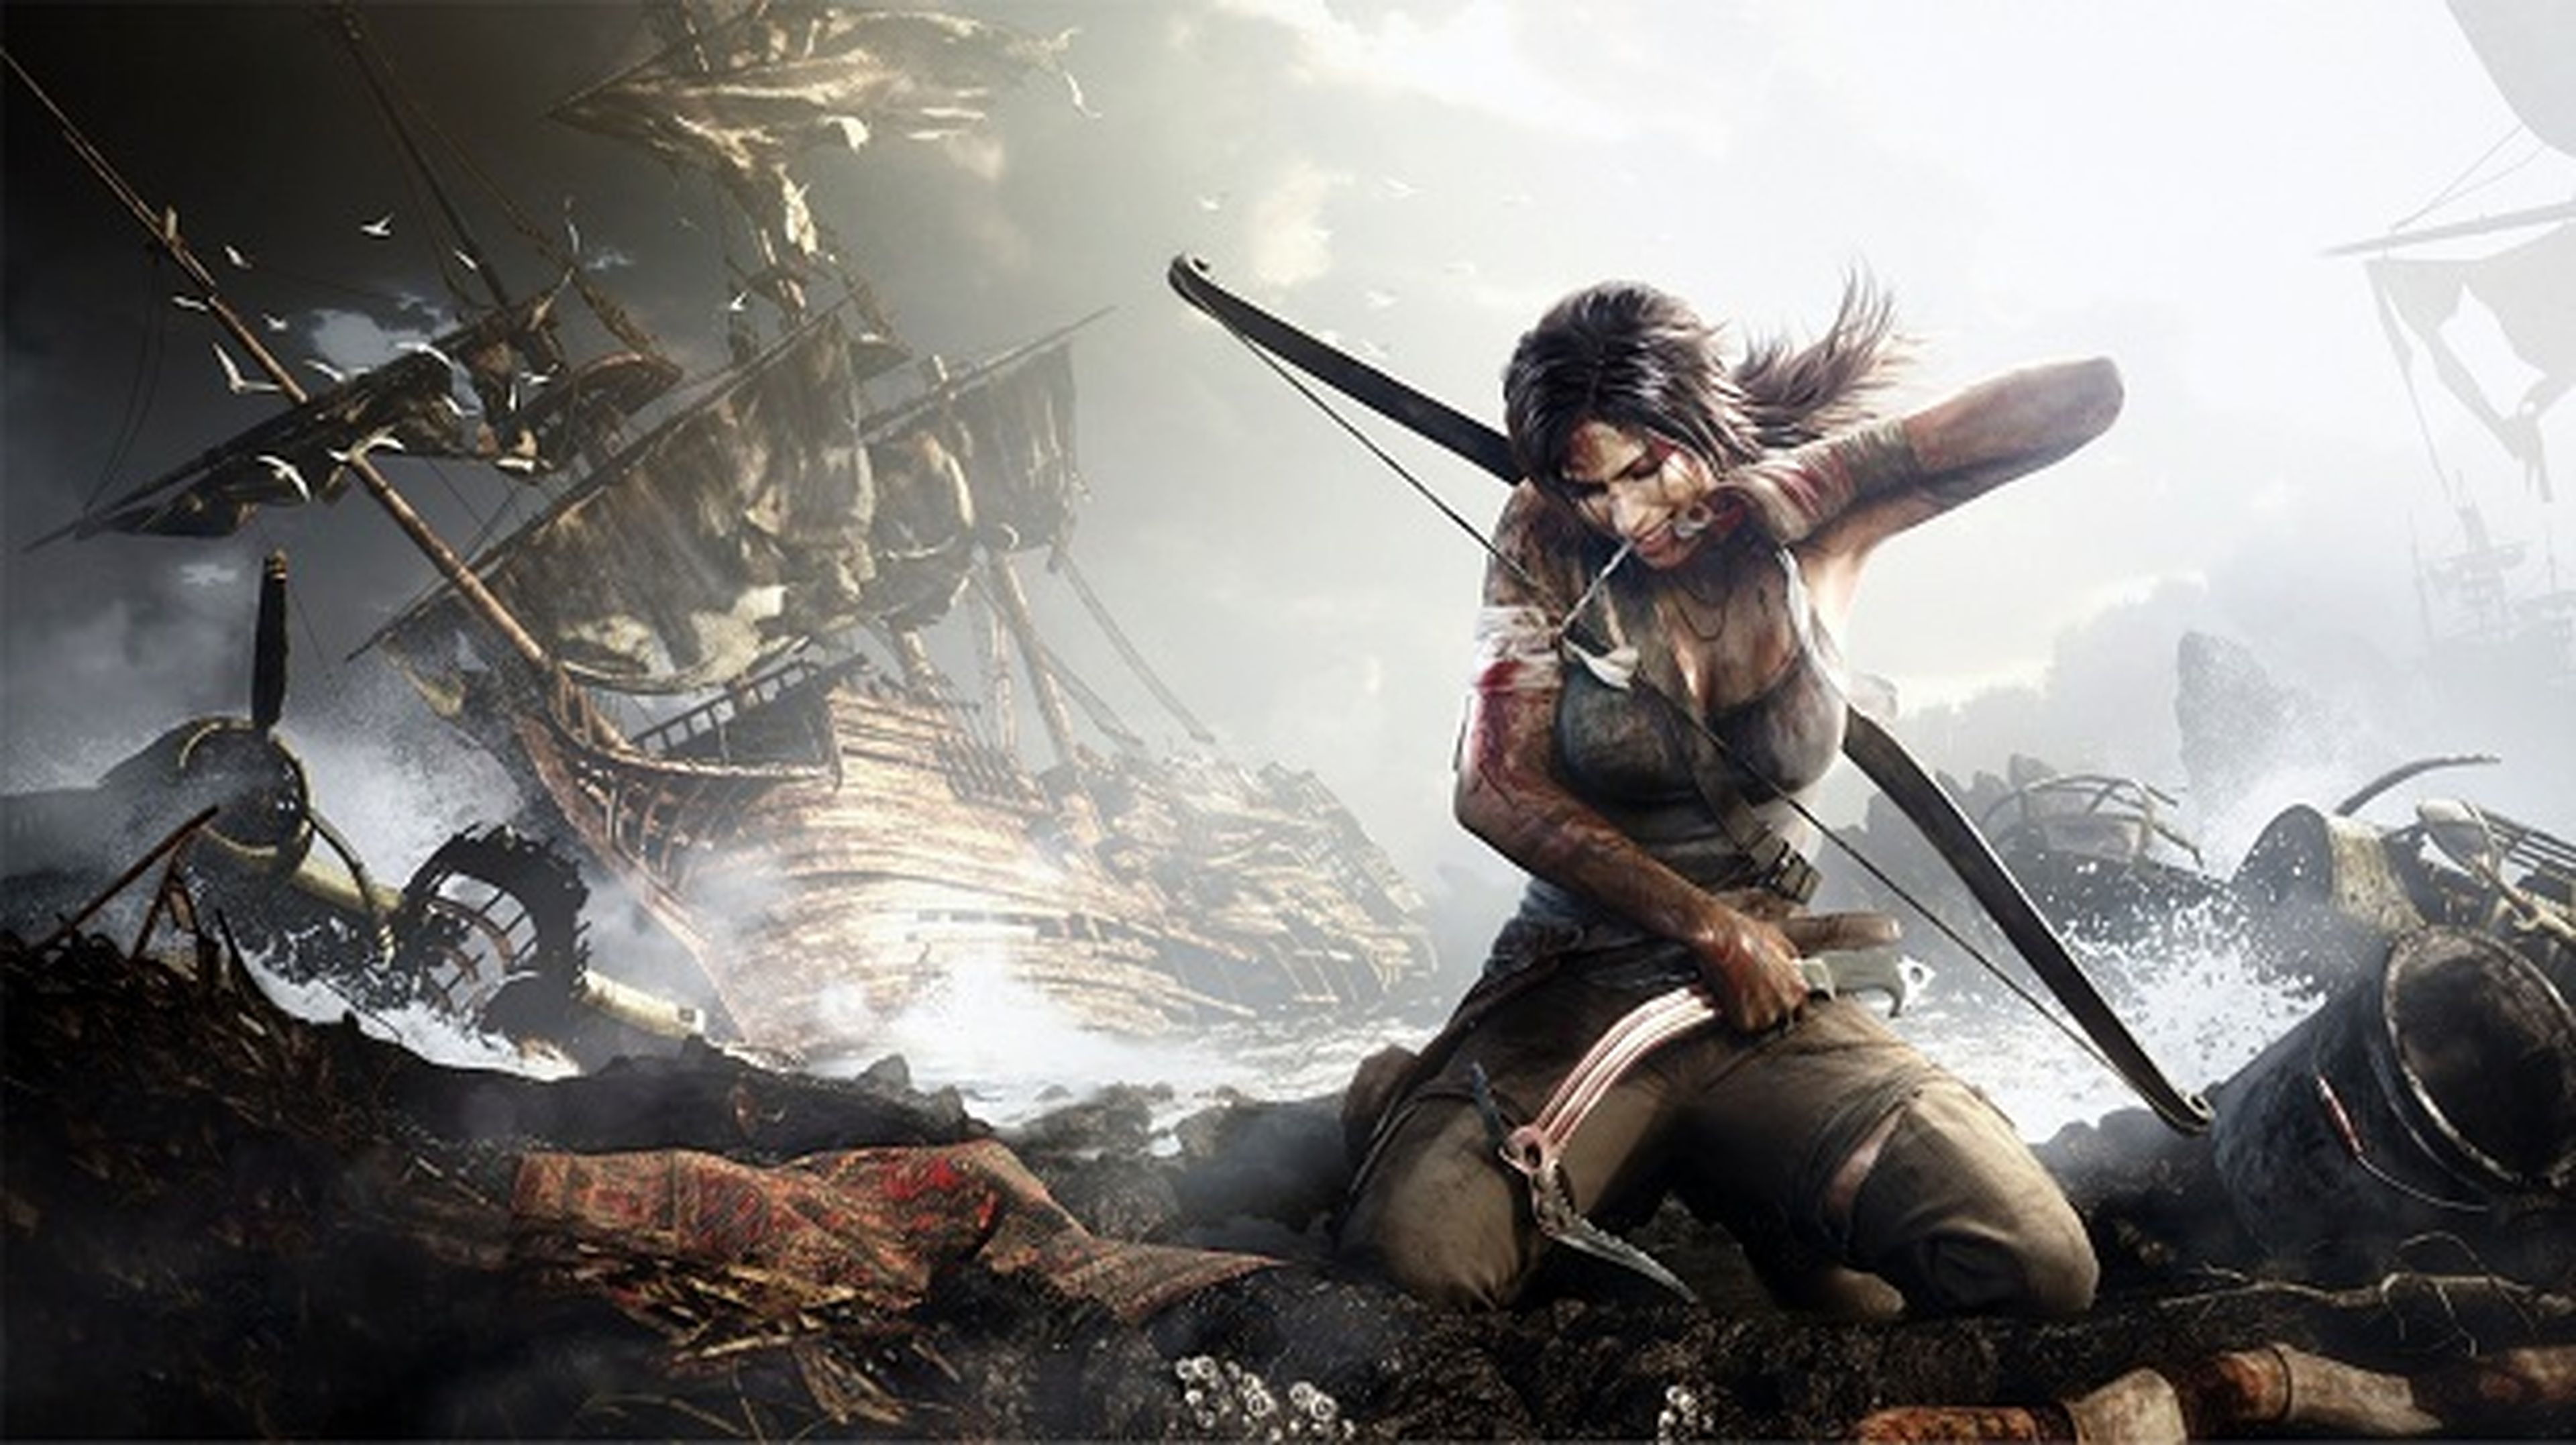 El reboot de Tomb Raider vende 8,5 millones de copias